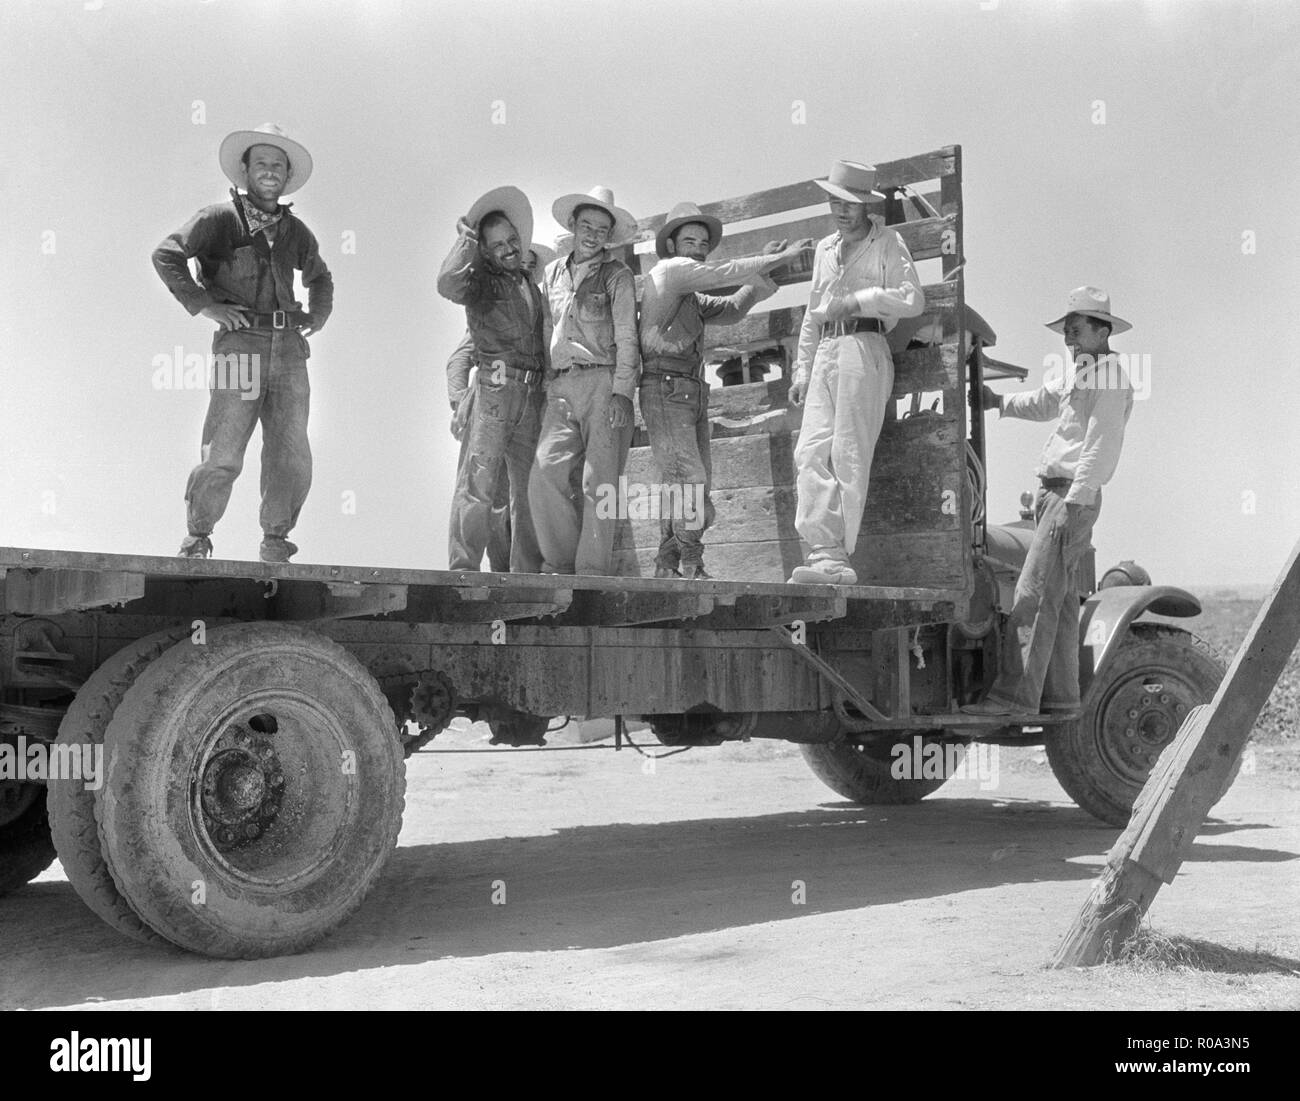 Gruppe der mexikanischen Arbeiter auf Tieflader nach einem Tag in der Melone Felder, Imperial Valley, Kalifornien, USA, Dorothea Lange, Farm Security Administration, Juni 1935 Stockfoto